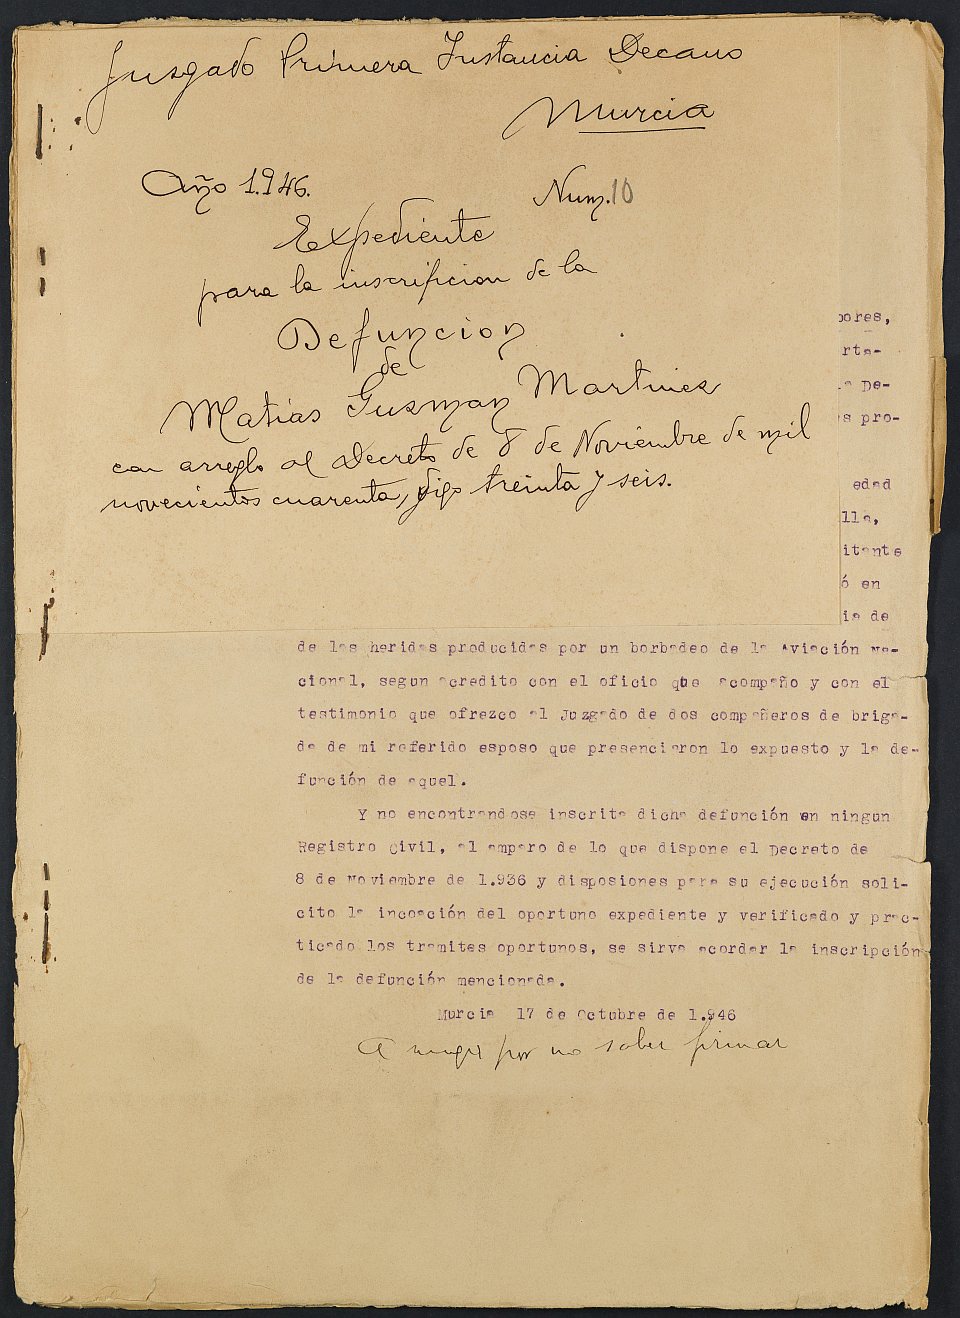 Expediente nº 10/1946 del Juzgado de Primera Instancia de Murcia para la inscripción en el Registro Civil por la defunción en el frente de Matias Guzmán Martínez.